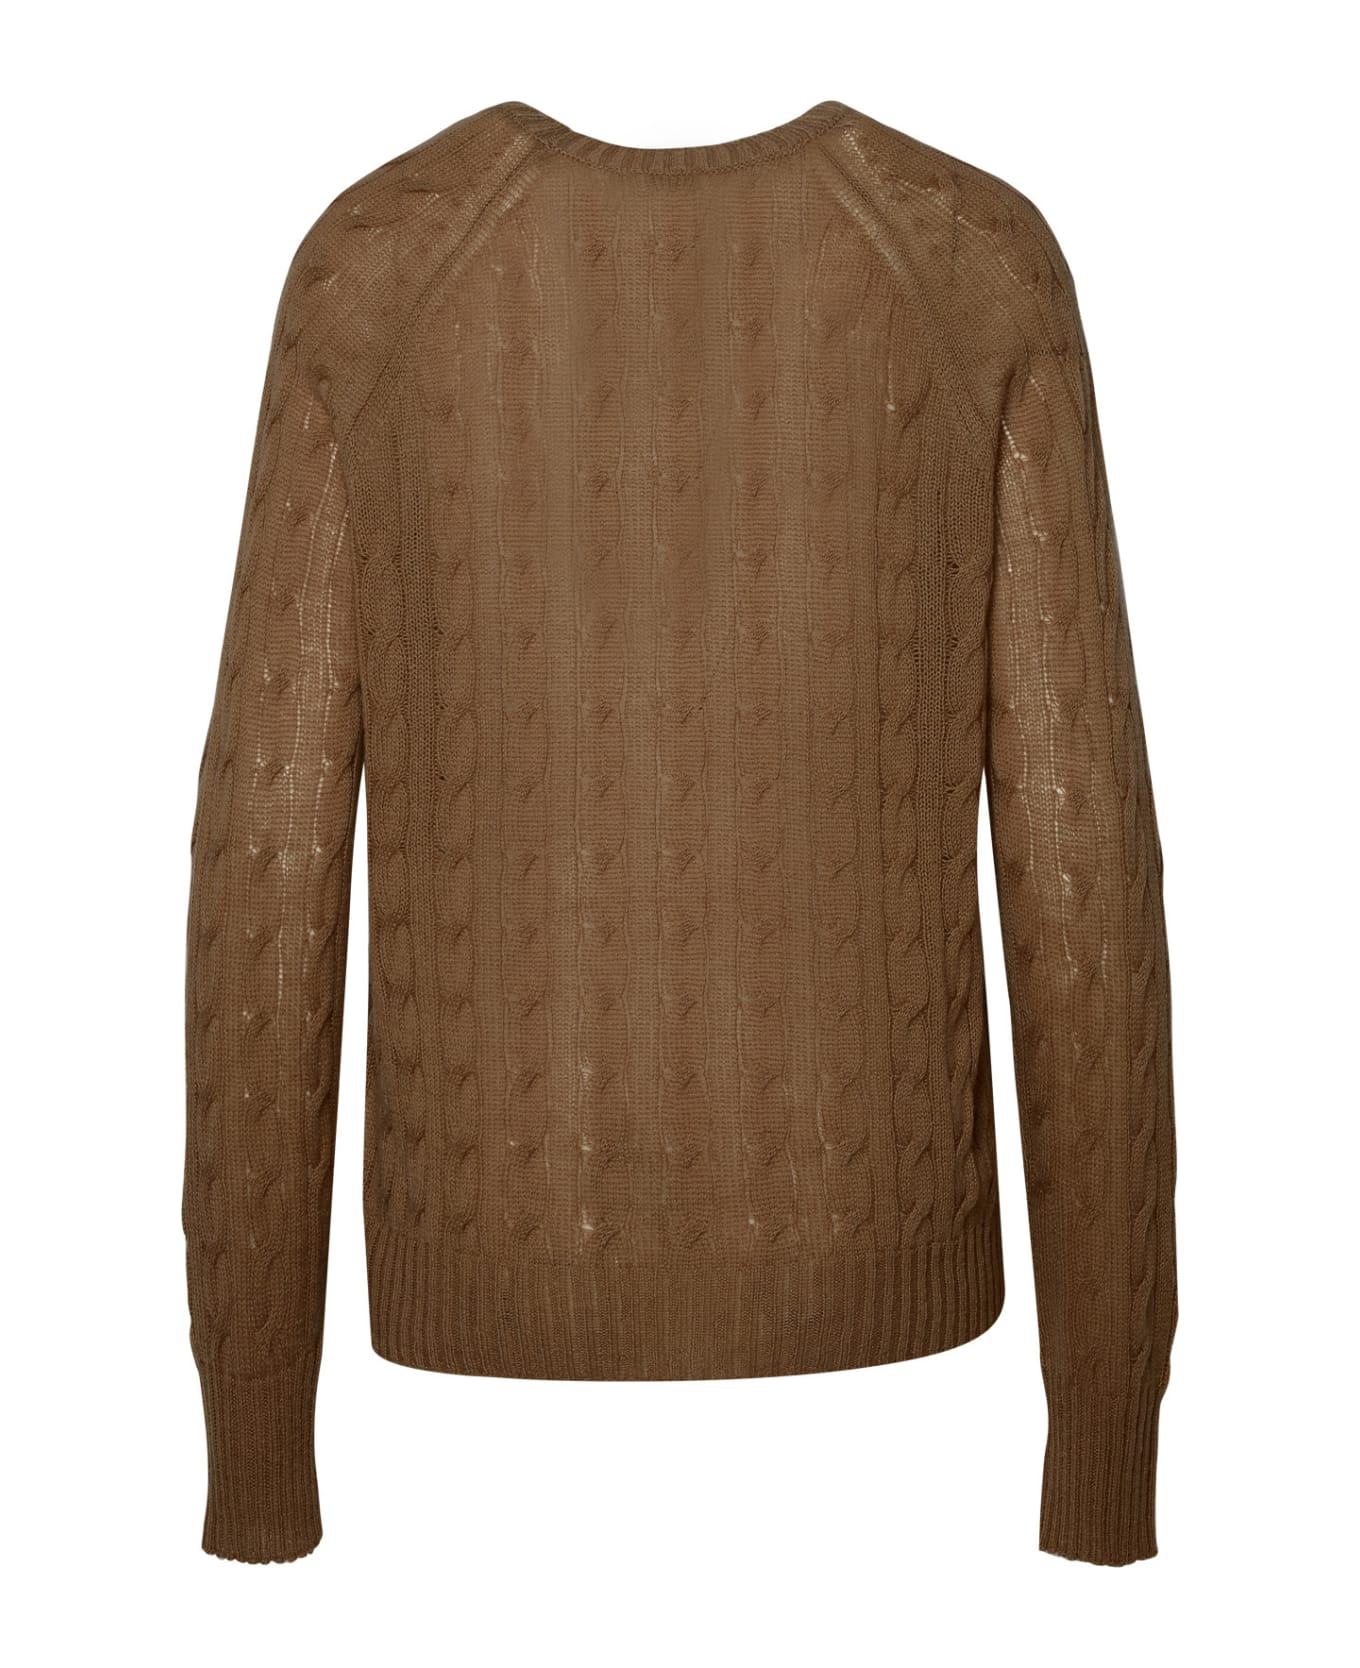 Etro Brown Cashmere Sweater - Beige